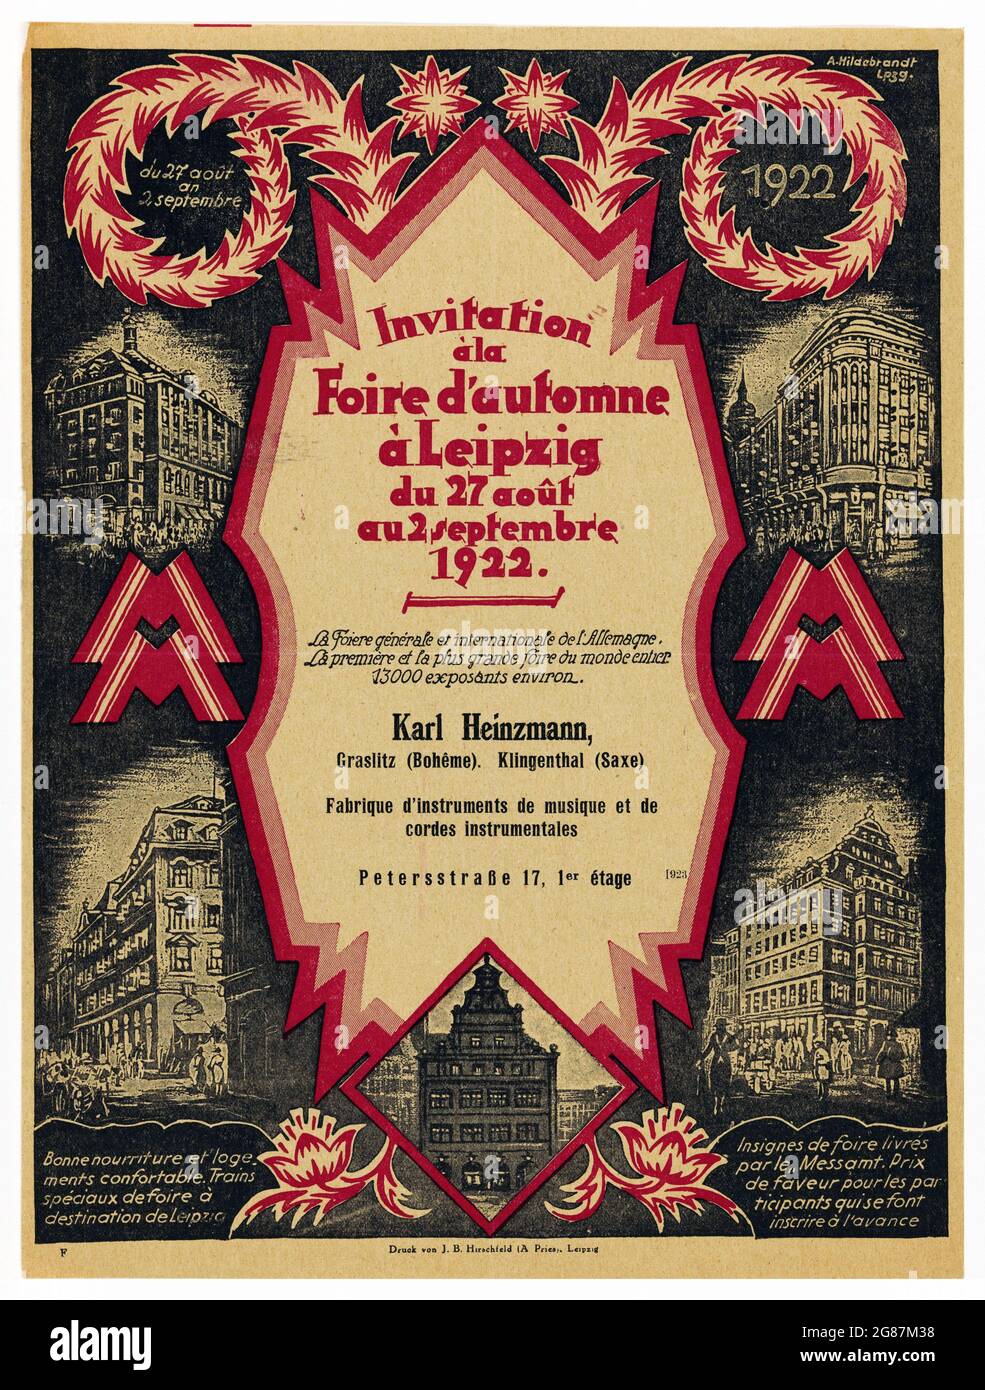 Uitnodiging van instrumentenmaker Karl Heinzmann voor de voorjaarsmarkt in Leipzig Invitation a la Foire d'automne. 1922. Old invitation. Stock Photo